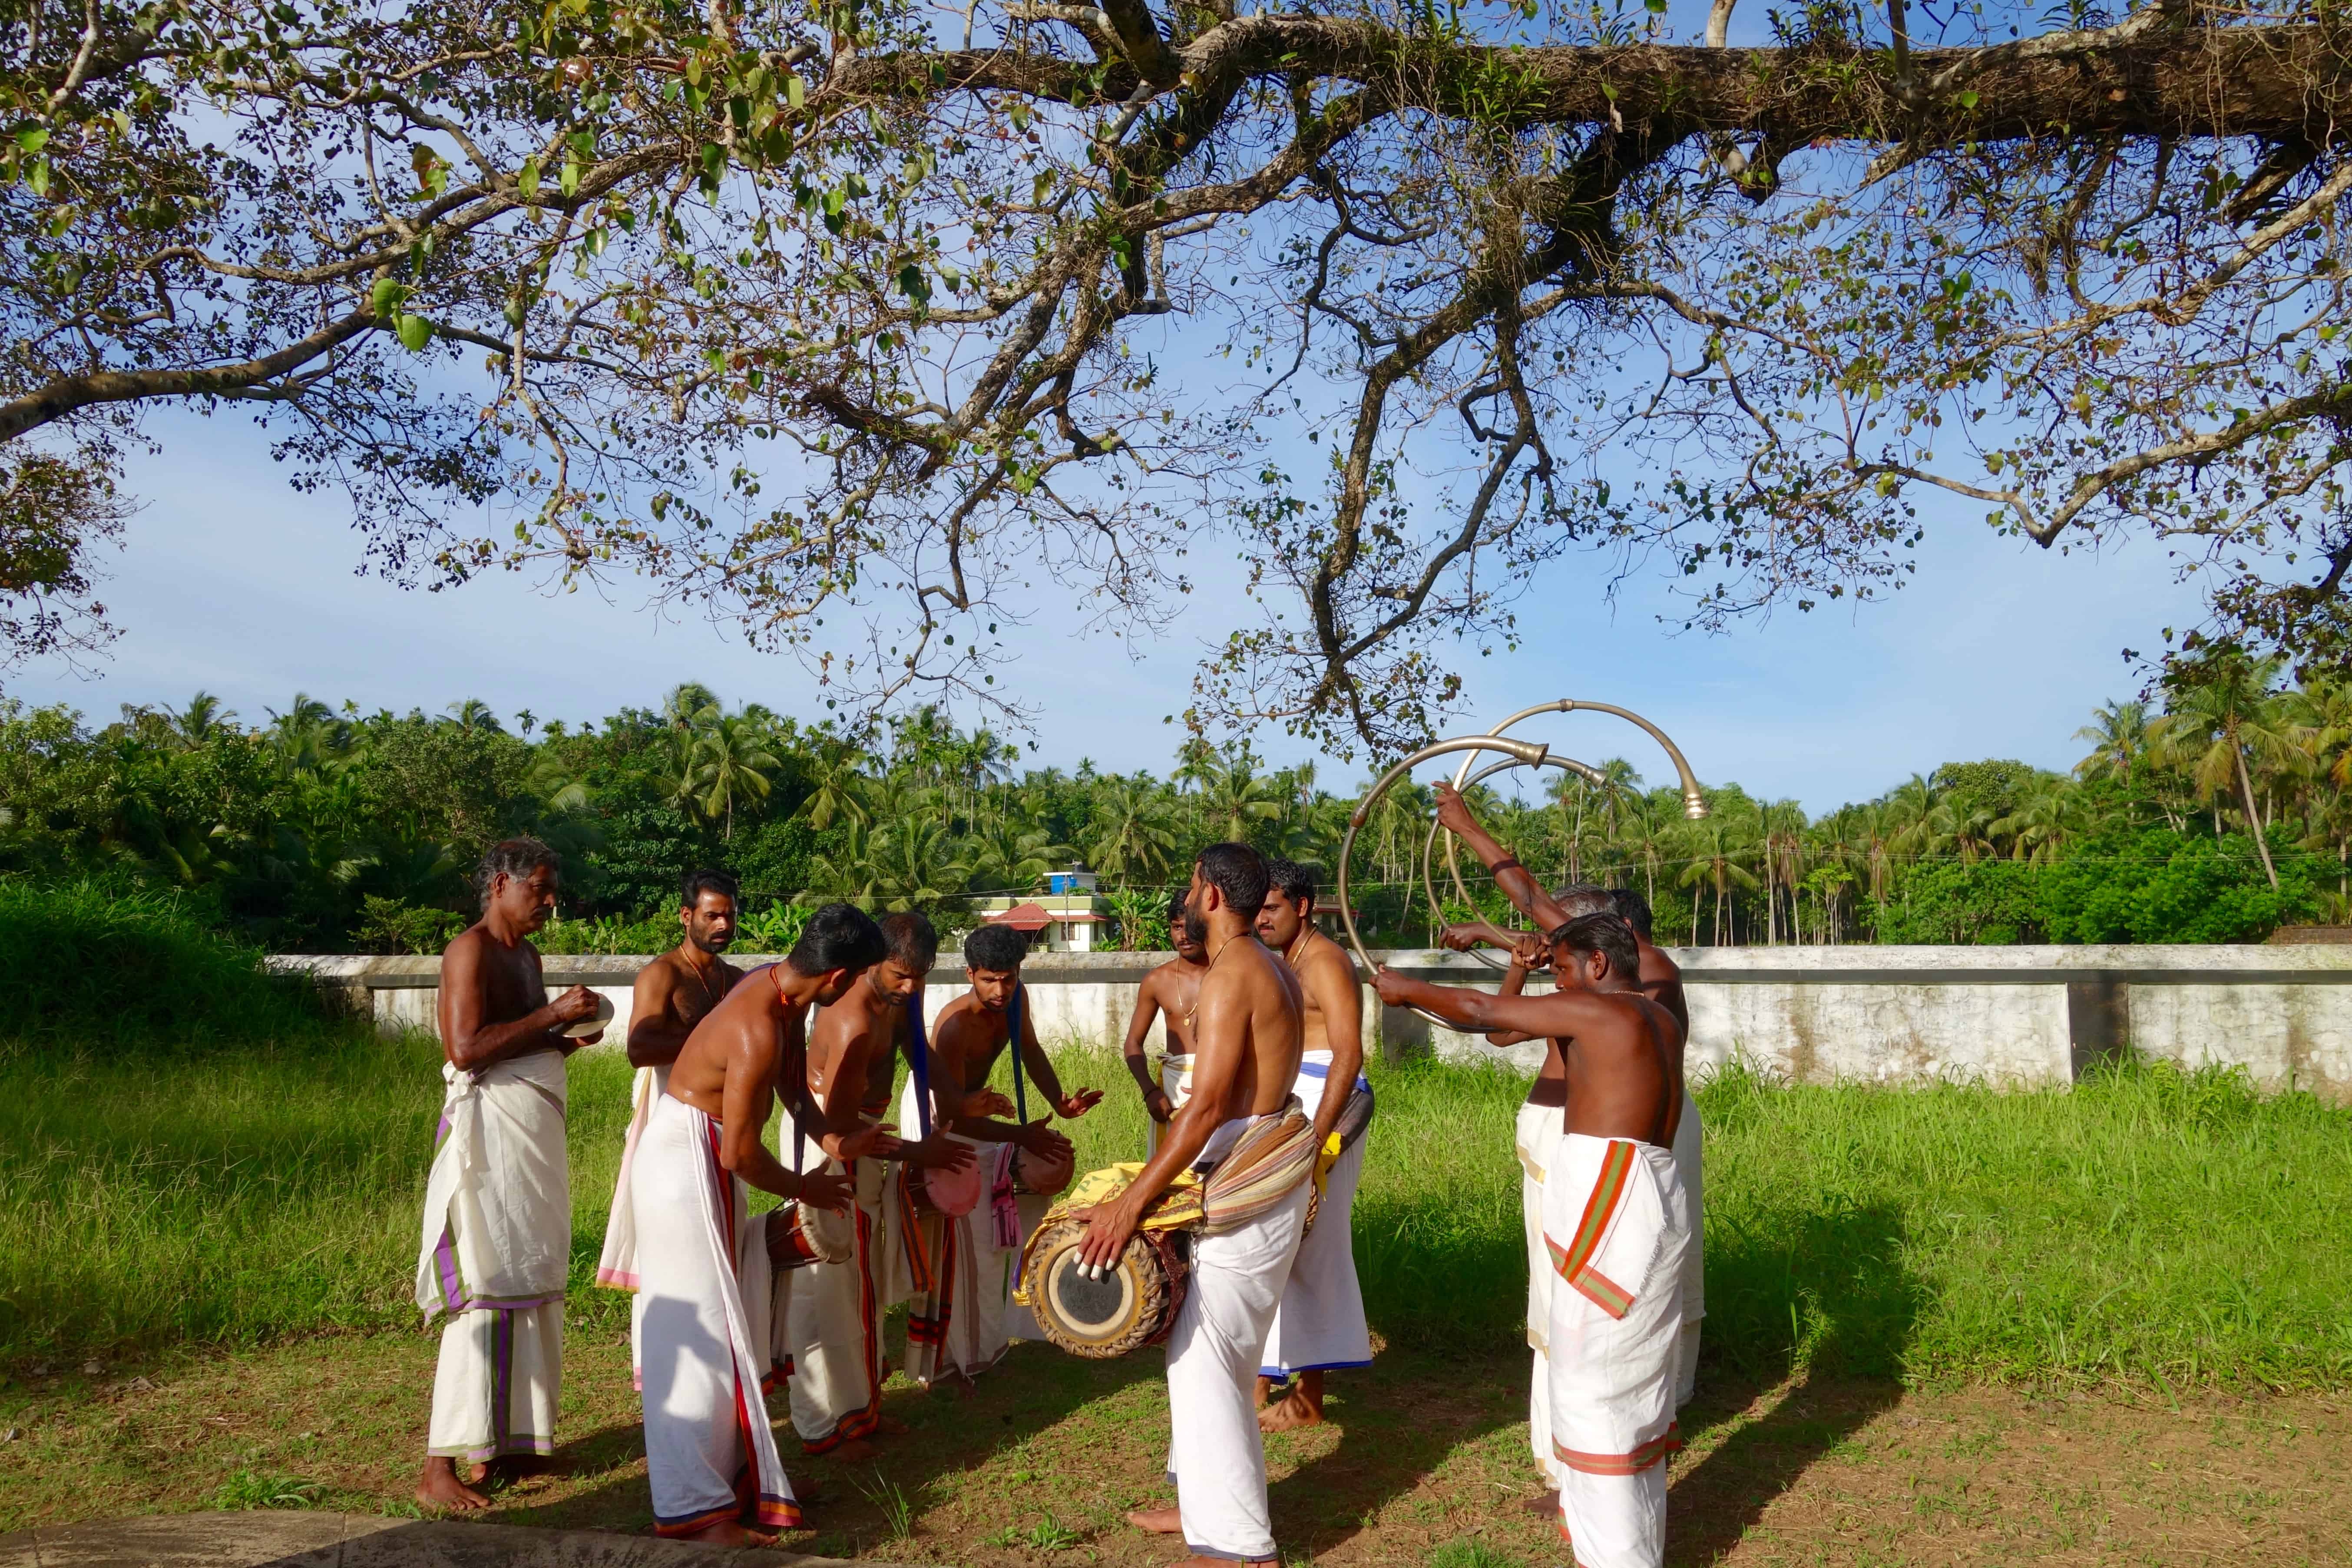 percussion music kerala, kerala for artists, responsible travel kerala, nila river, river nila kerala